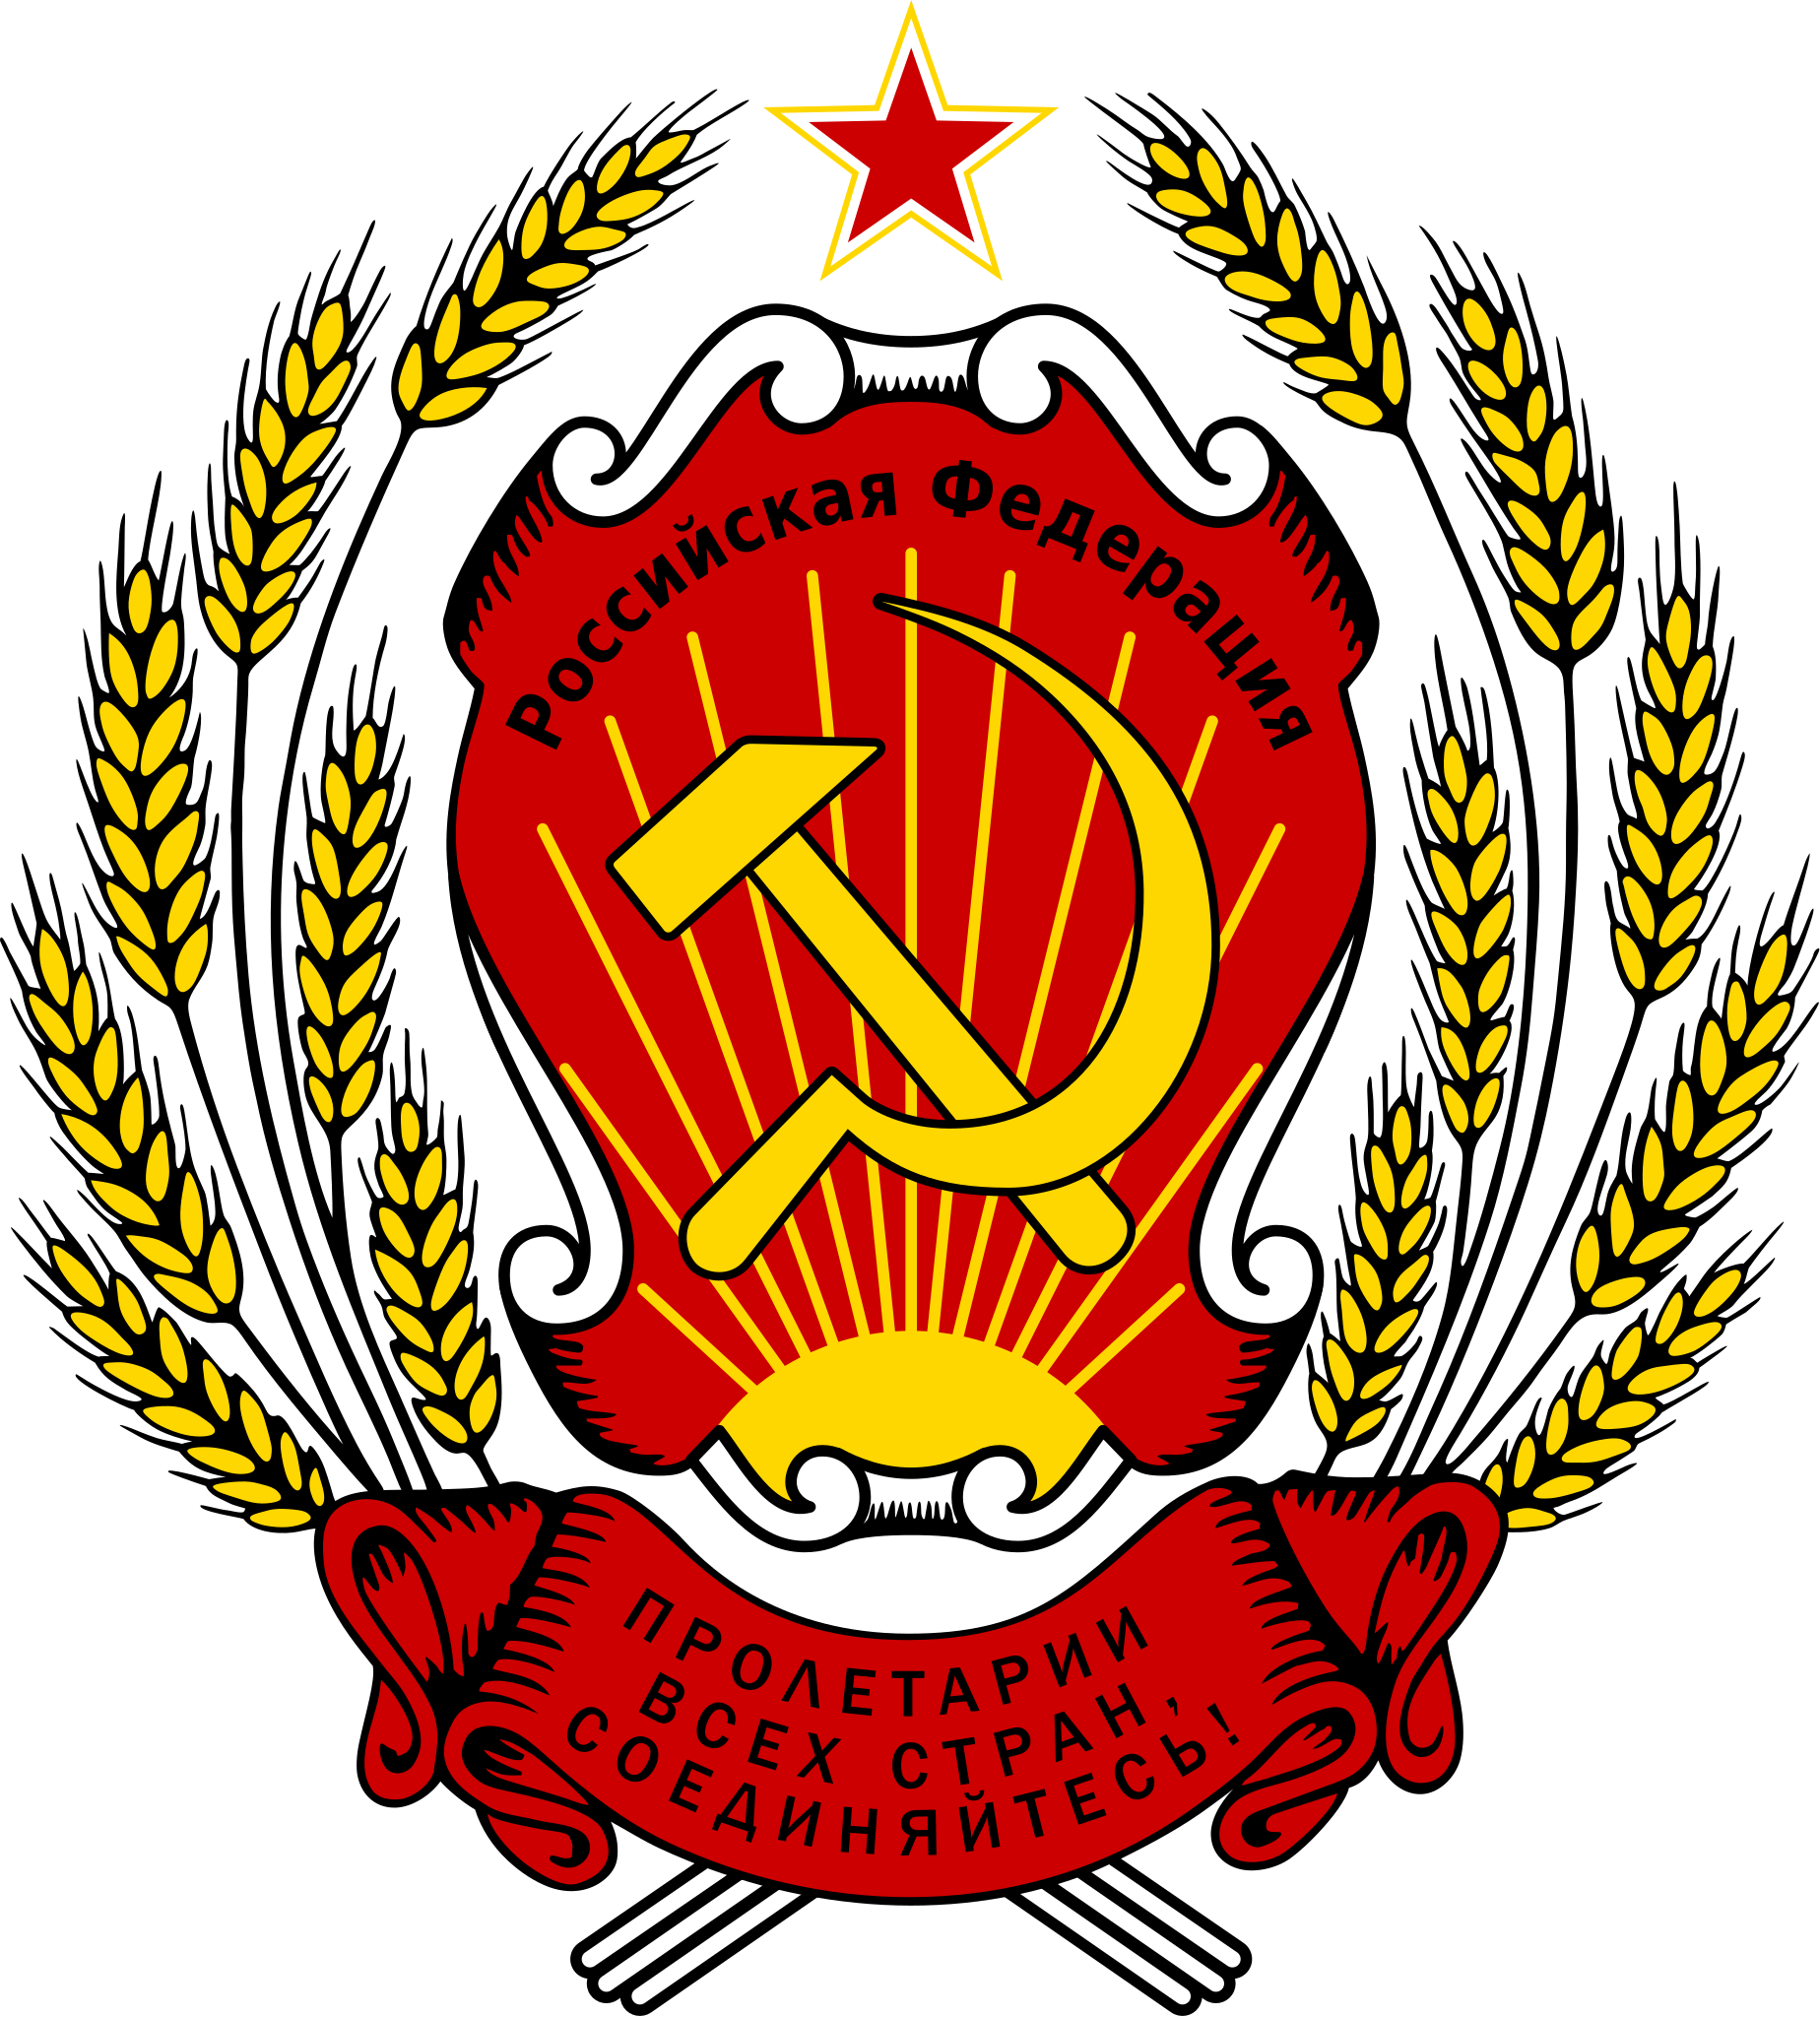 俄罗斯的国徽图片